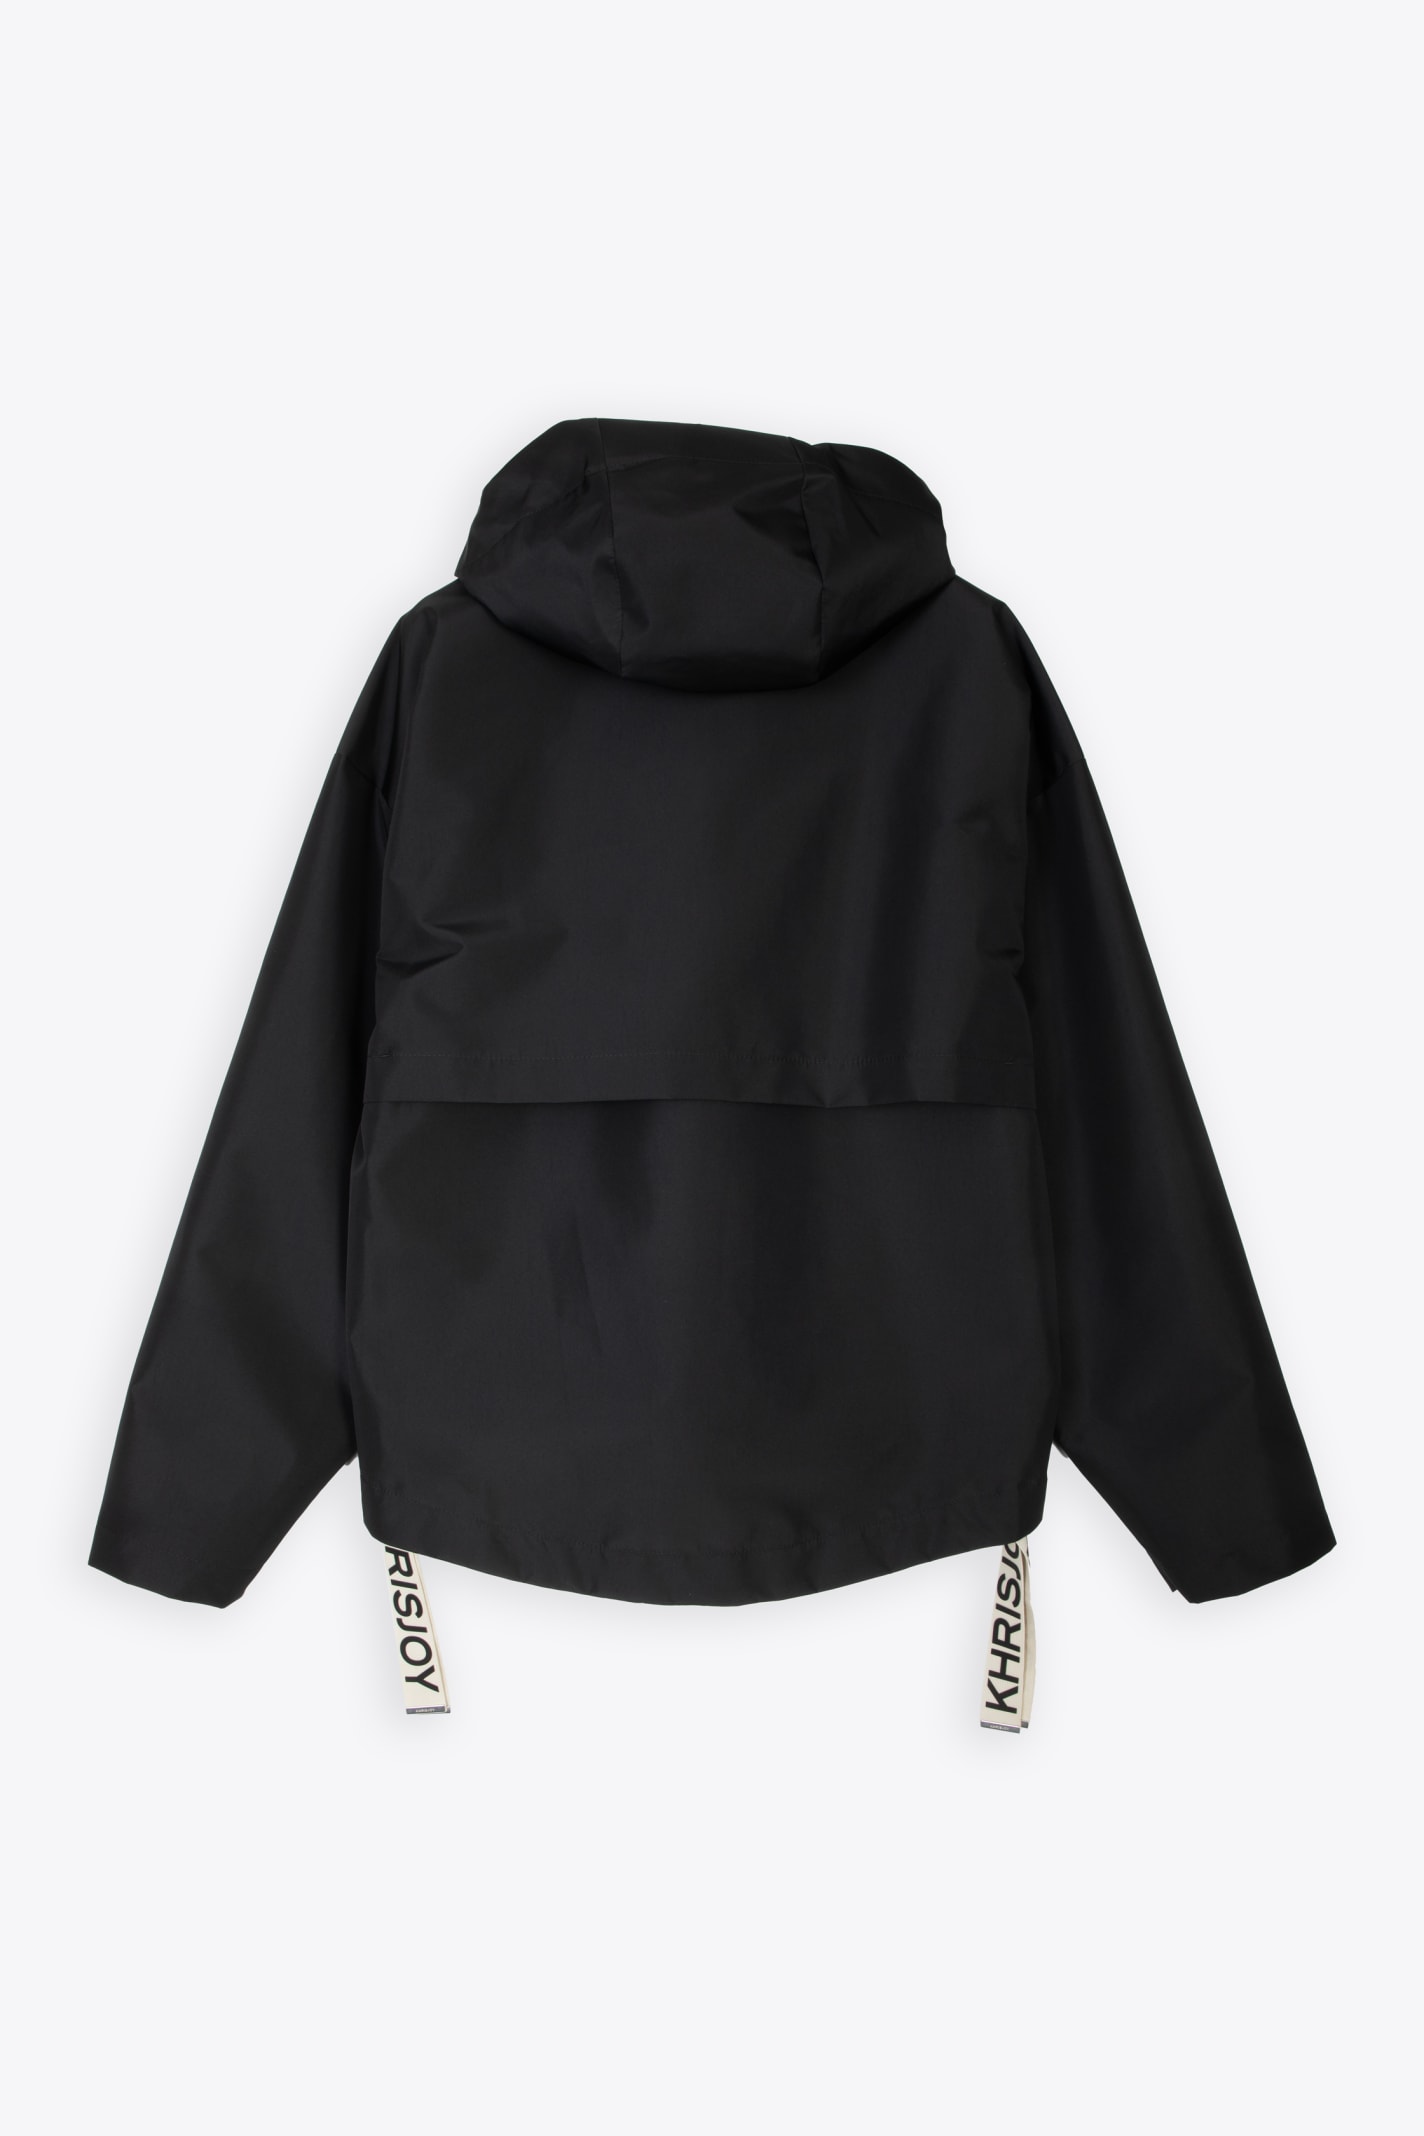 Shop Khrisjoy Shell Windbreaker Black Nylon Windproof Hooded Jacket - Shell Windbreaker